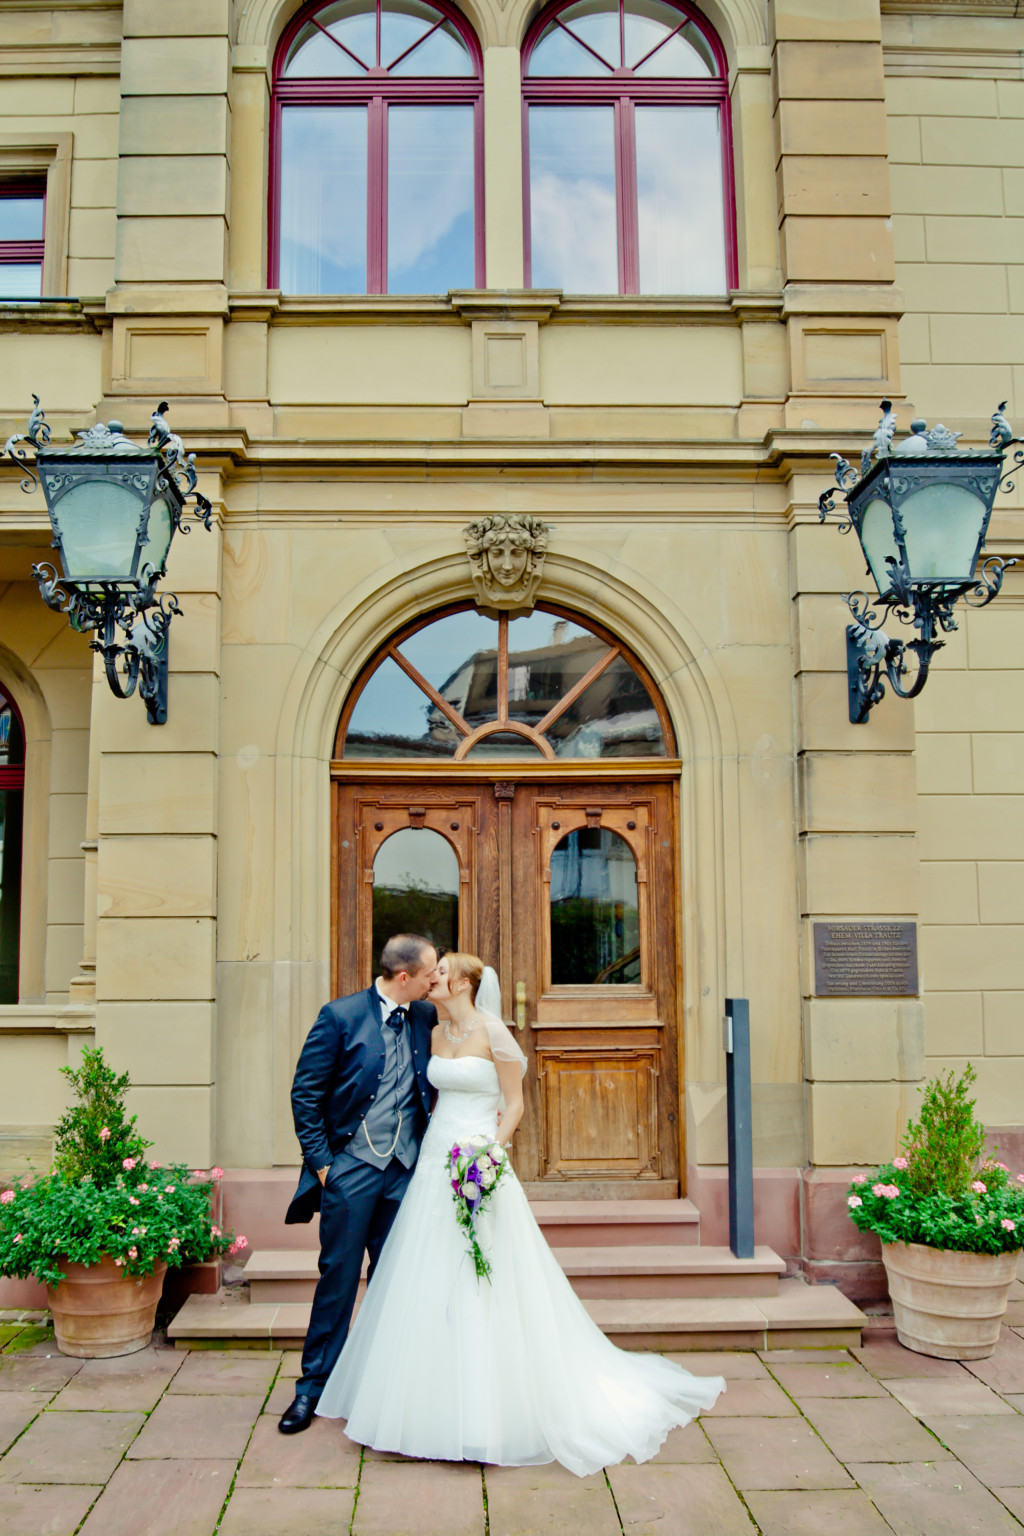 Hochzeitsreportage in Pforzheim im Parkhotel - https://hochzeitsfotograf-pforzheim.com/